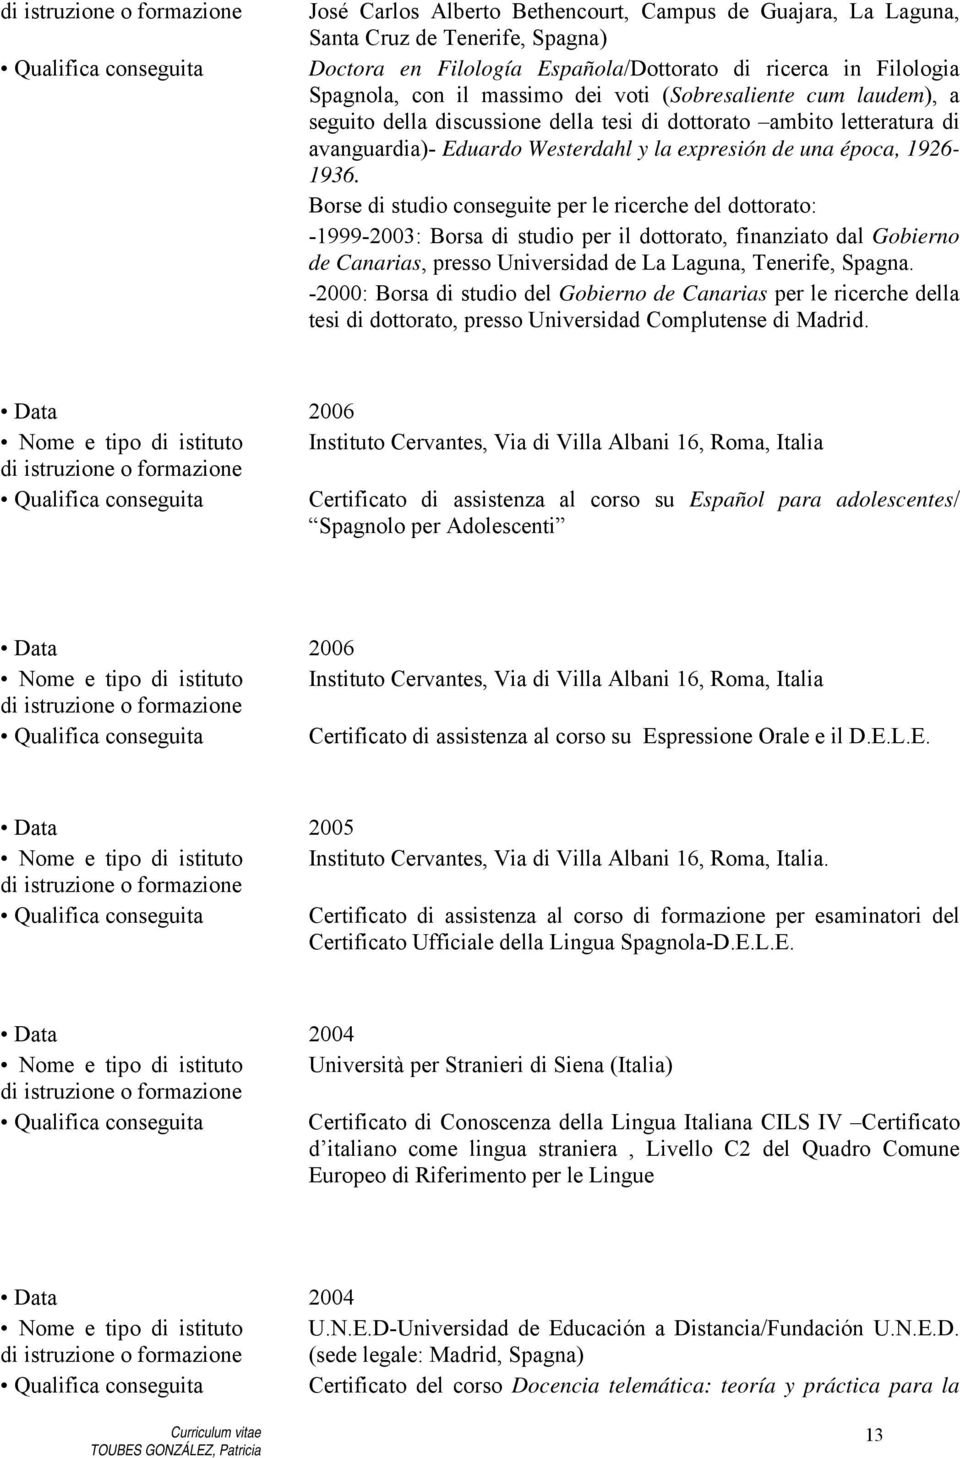 Borse di studio conseguite per le ricerche del dottorato: -1999-2003: Borsa di studio per il dottorato, finanziato dal Gobierno de Canarias, presso Universidad de La Laguna, Tenerife, Spagna.